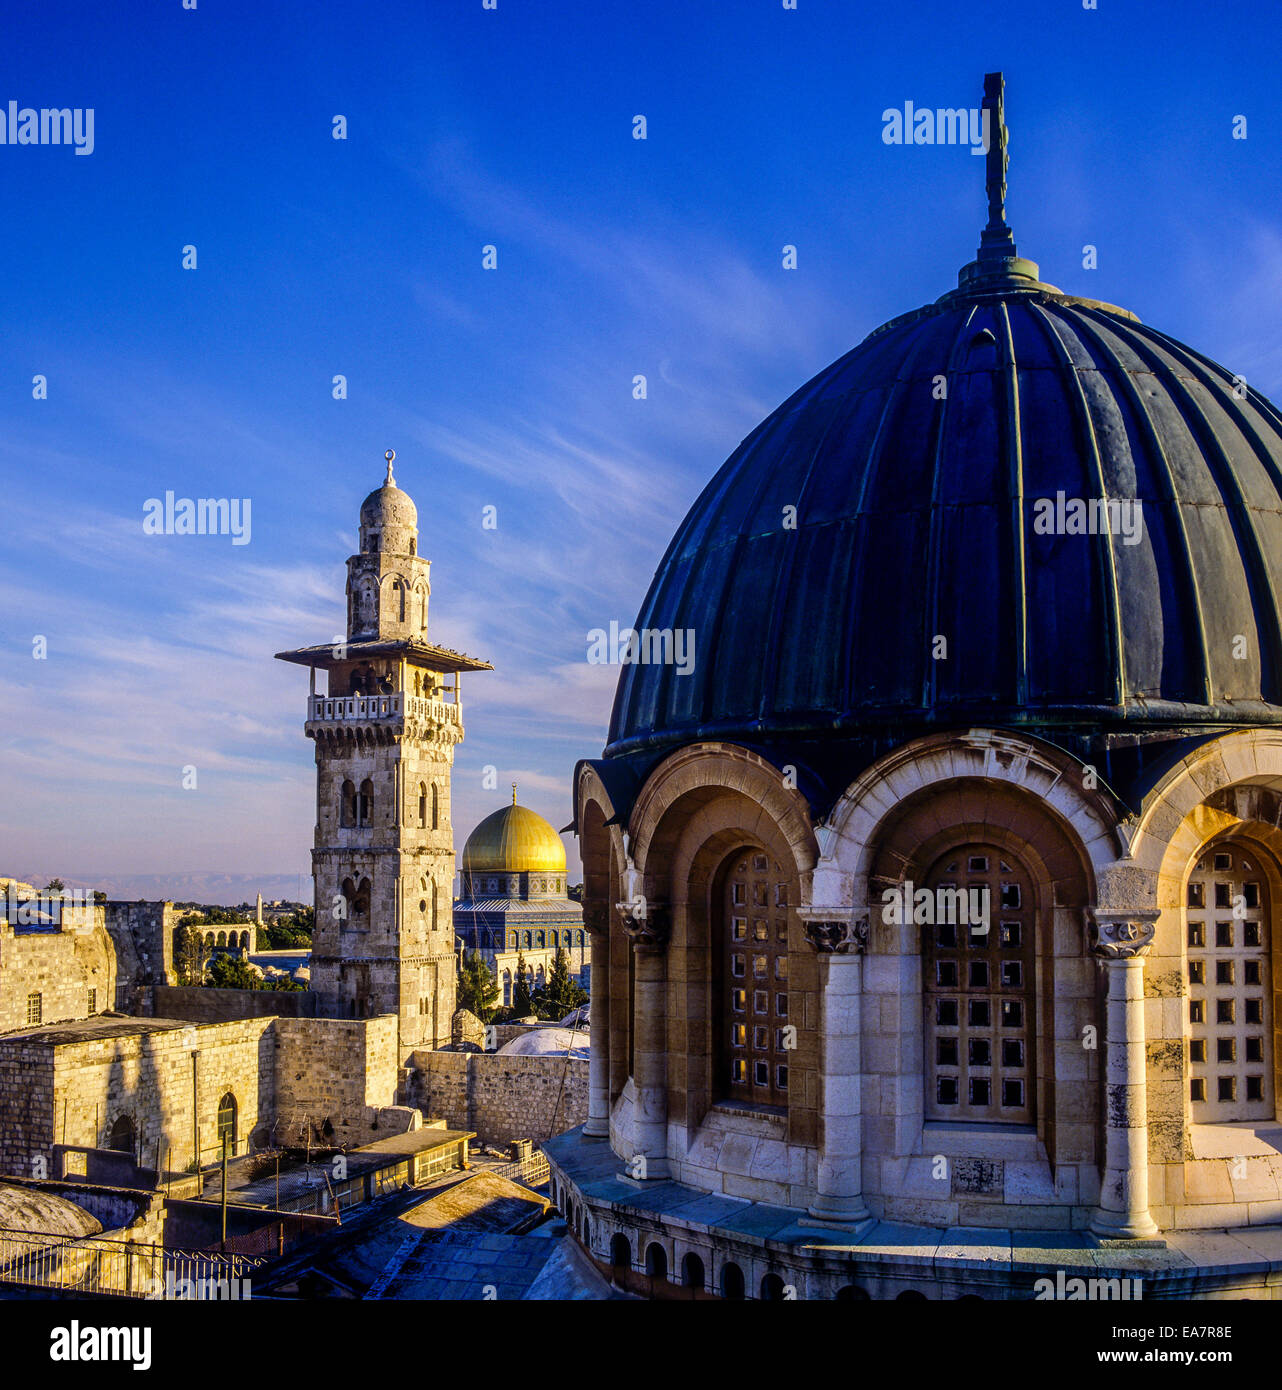 Le dôme de la basilique de l'Ecce Homo avec Bab Al-Ghawanima minaret et Dôme du Rocher Jérusalem Israël Banque D'Images